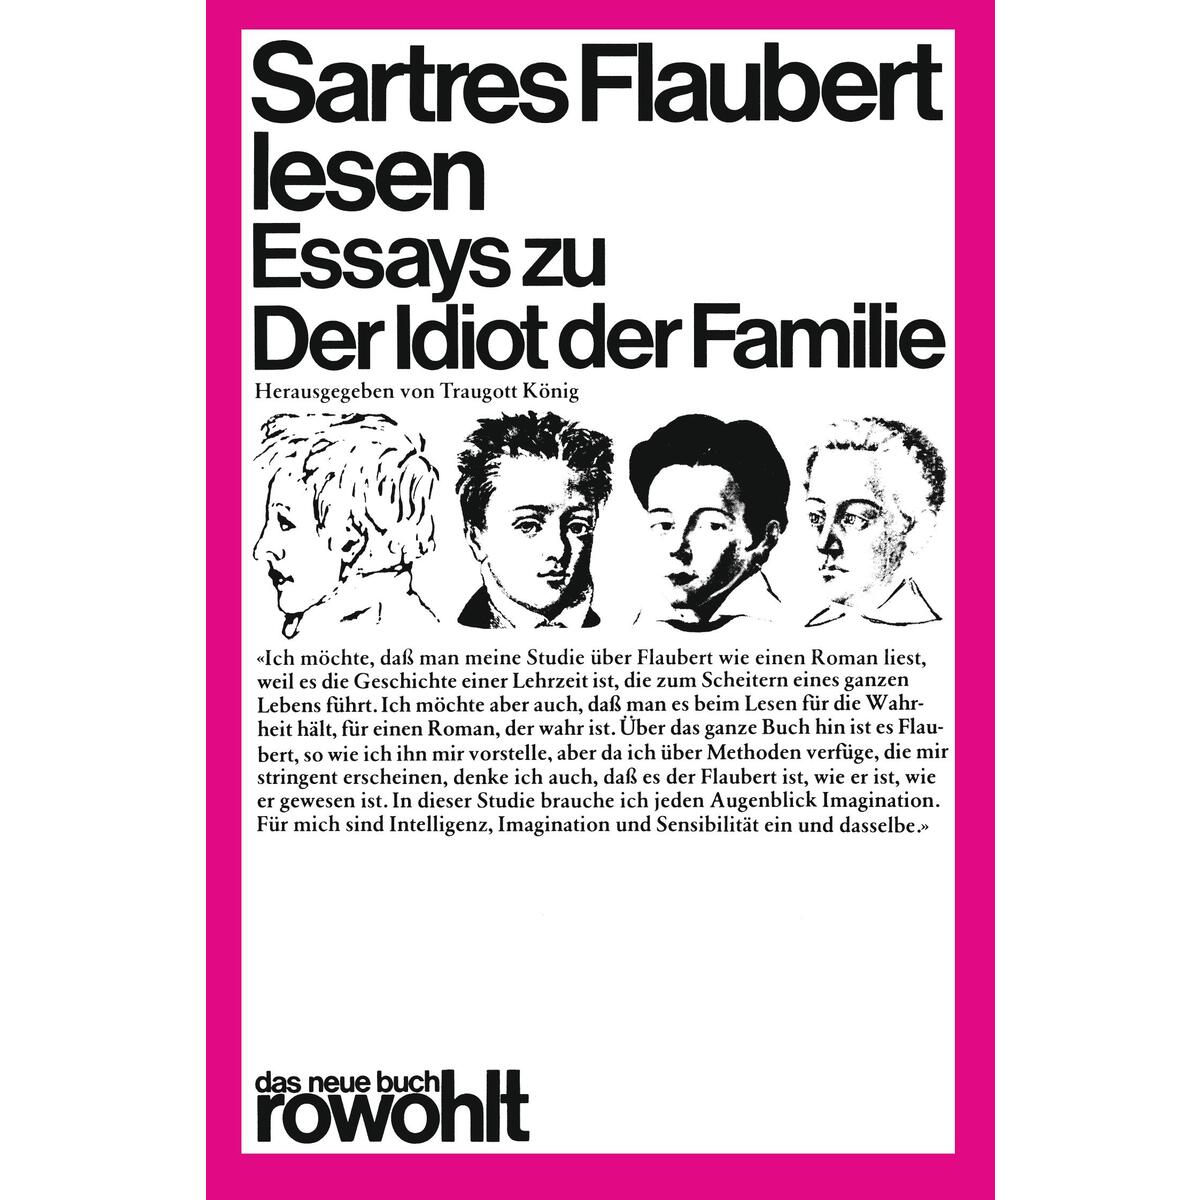 Sartres Flaubert lesen von Rowohlt Taschenbuch